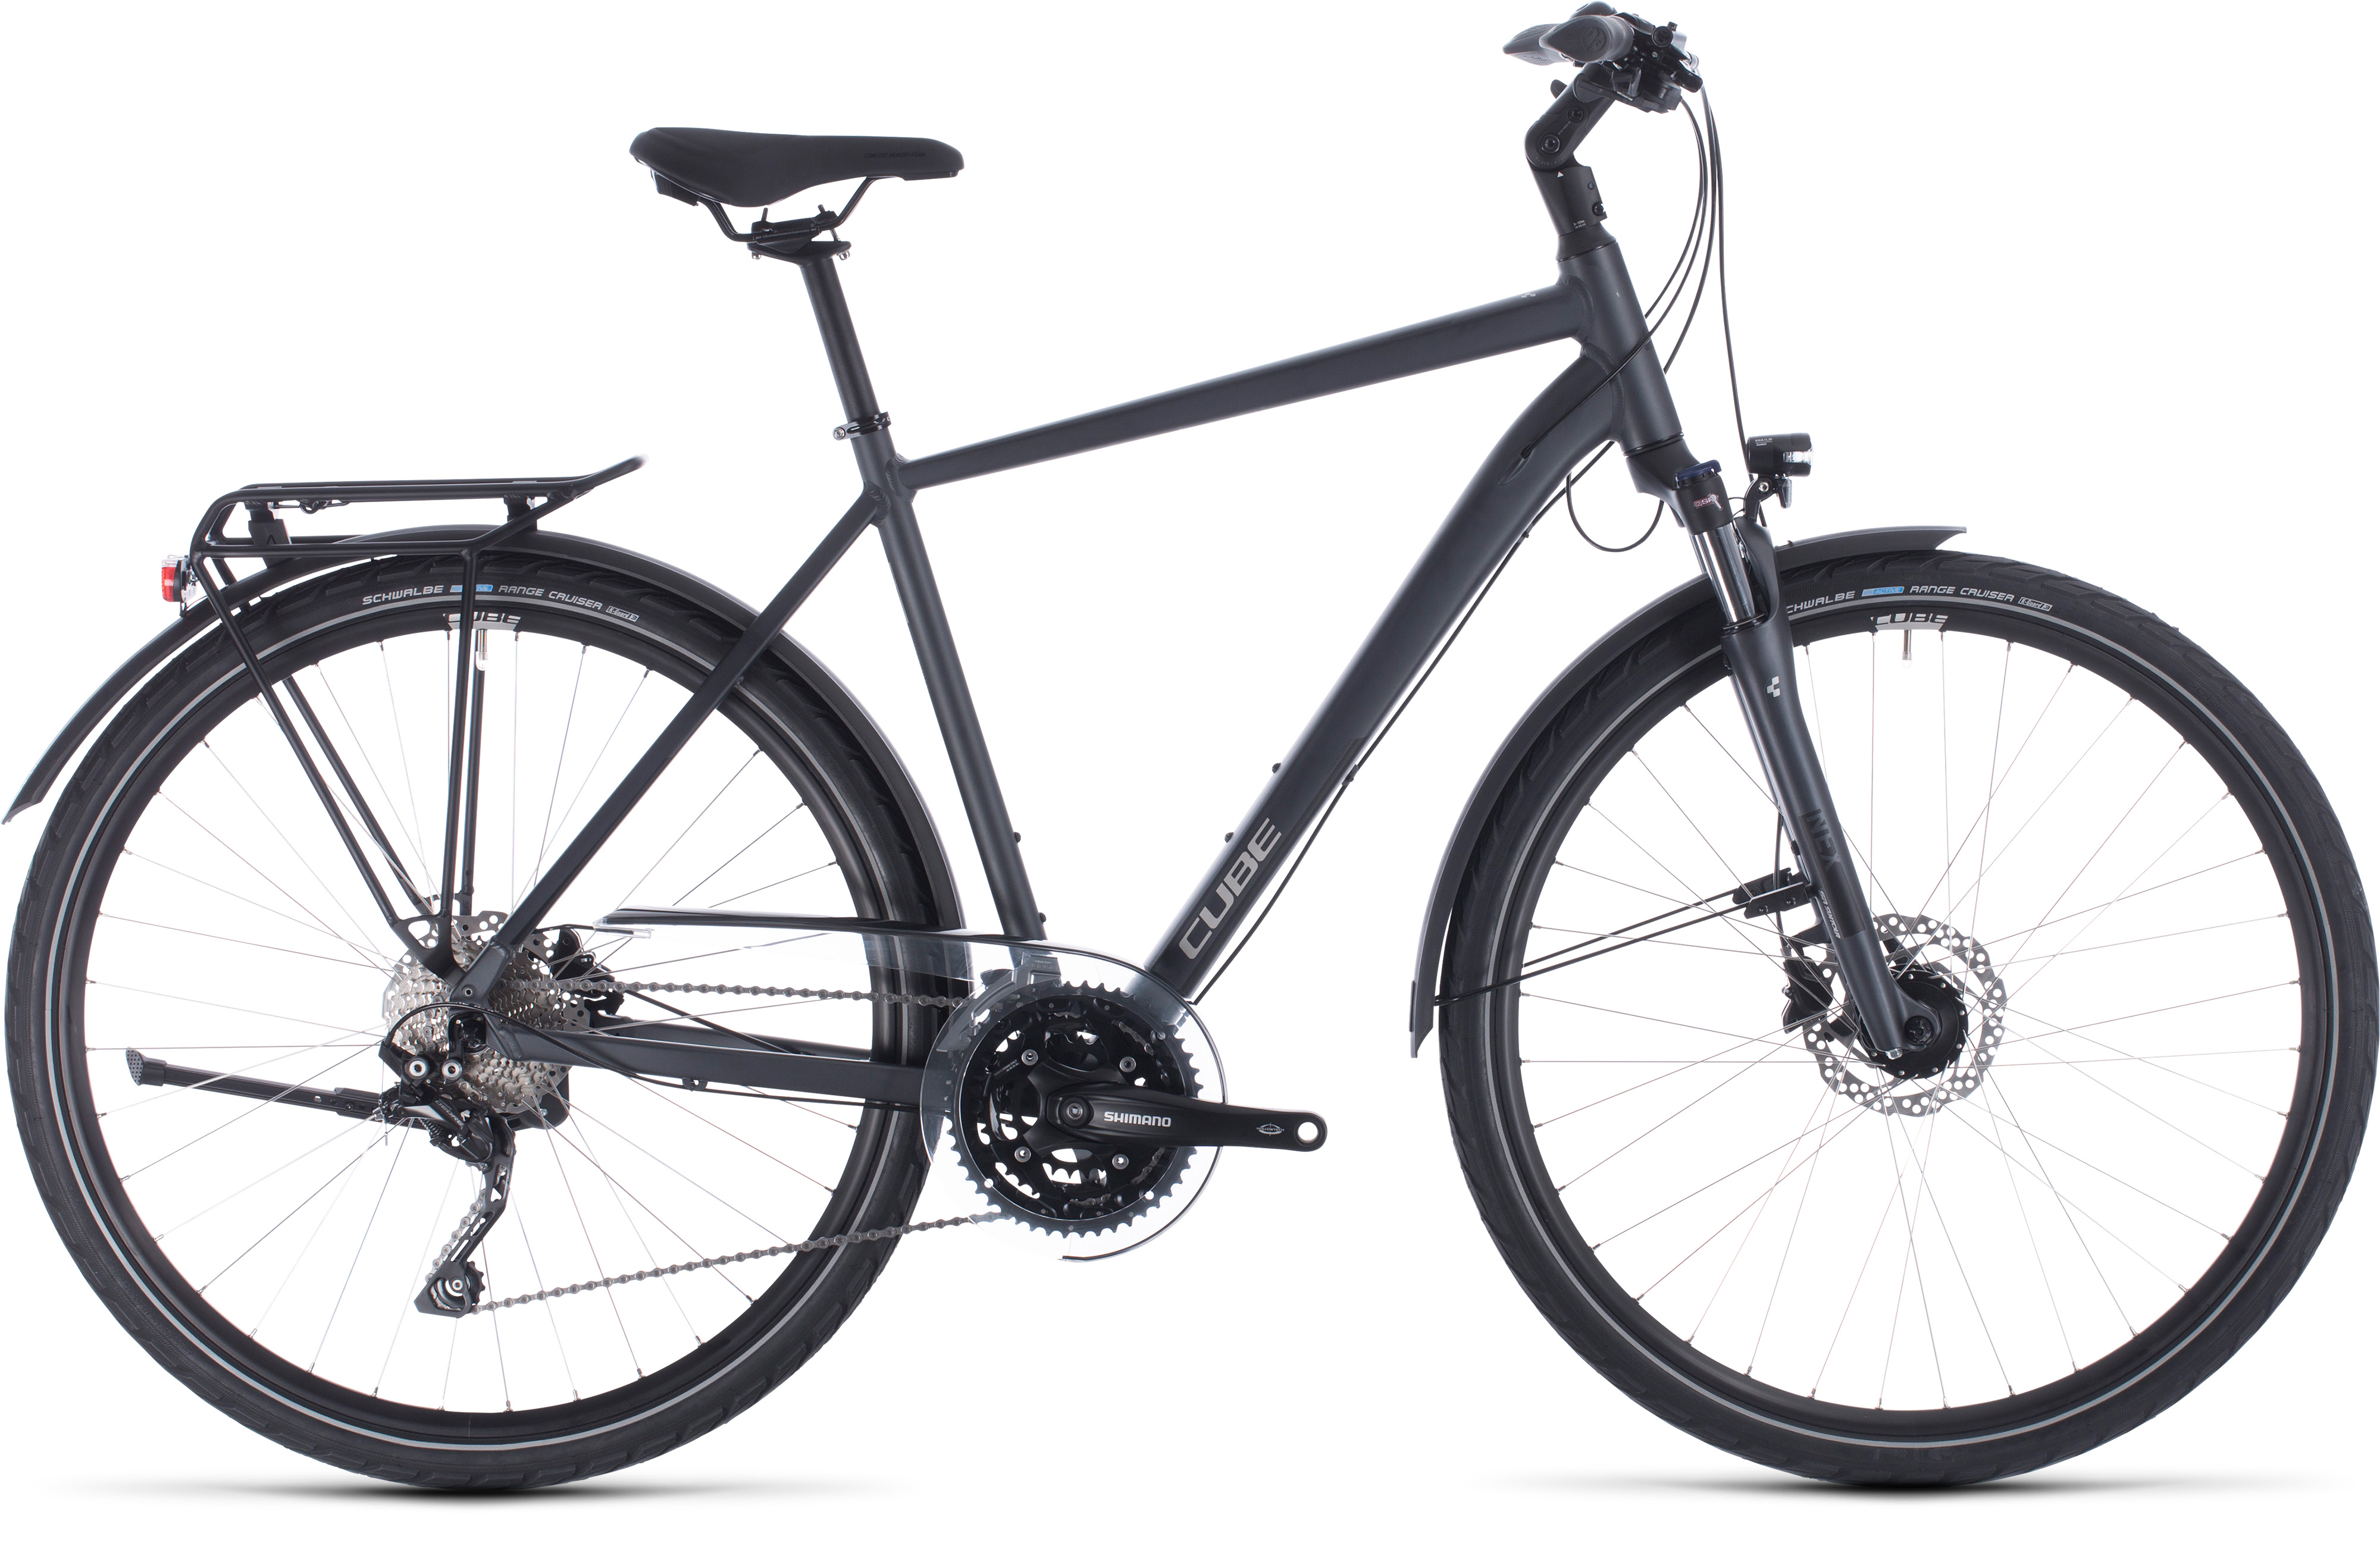  Отзывы о Городском велосипеде Cube Touring EXC 2020